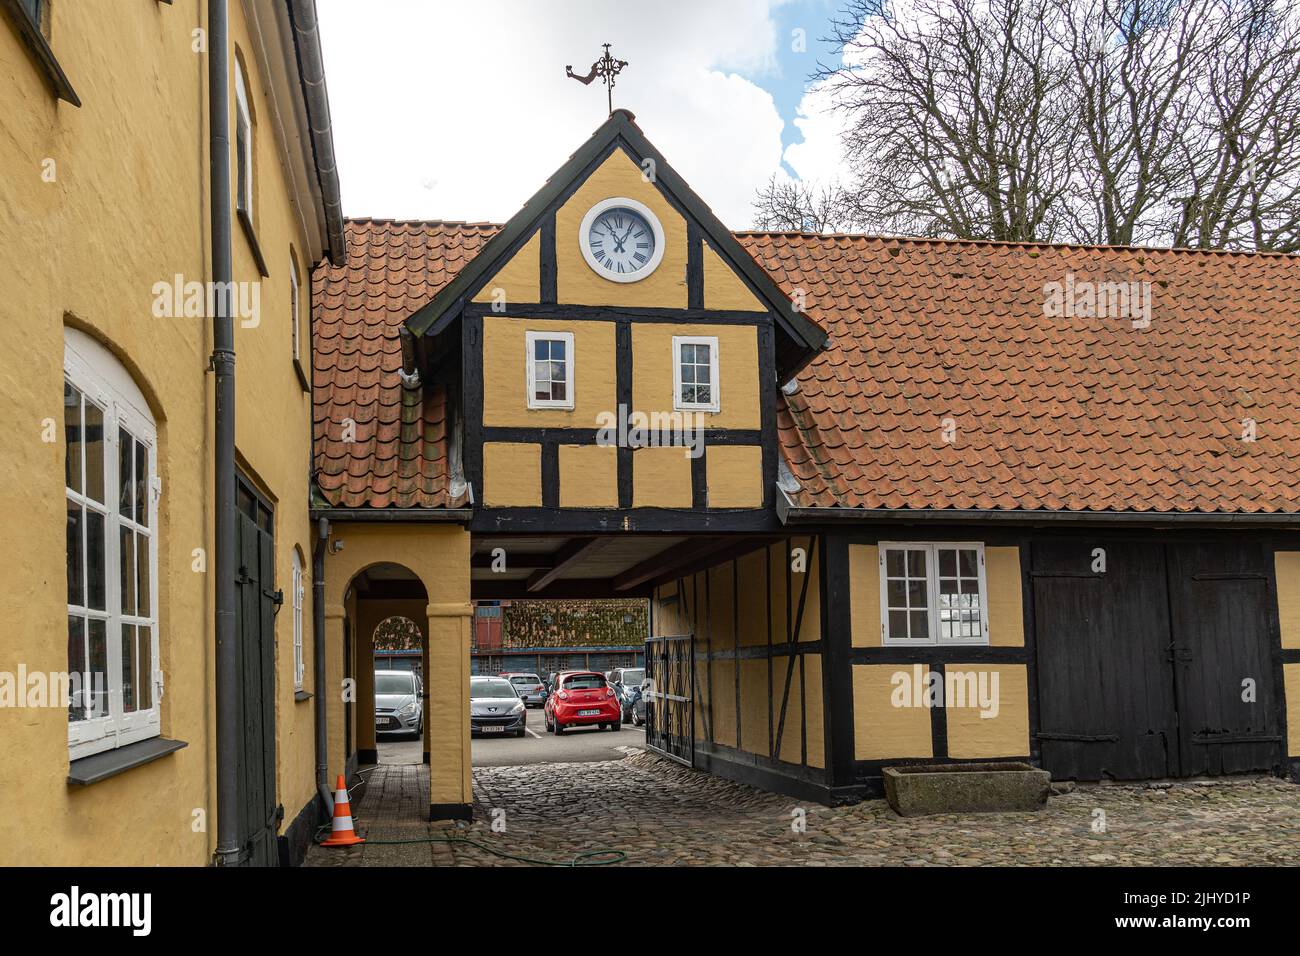 Detalle arquitectónico de un edificio danés tradicional con el reloj y la veleta. Assens, Dinamarca, Europa Foto de stock